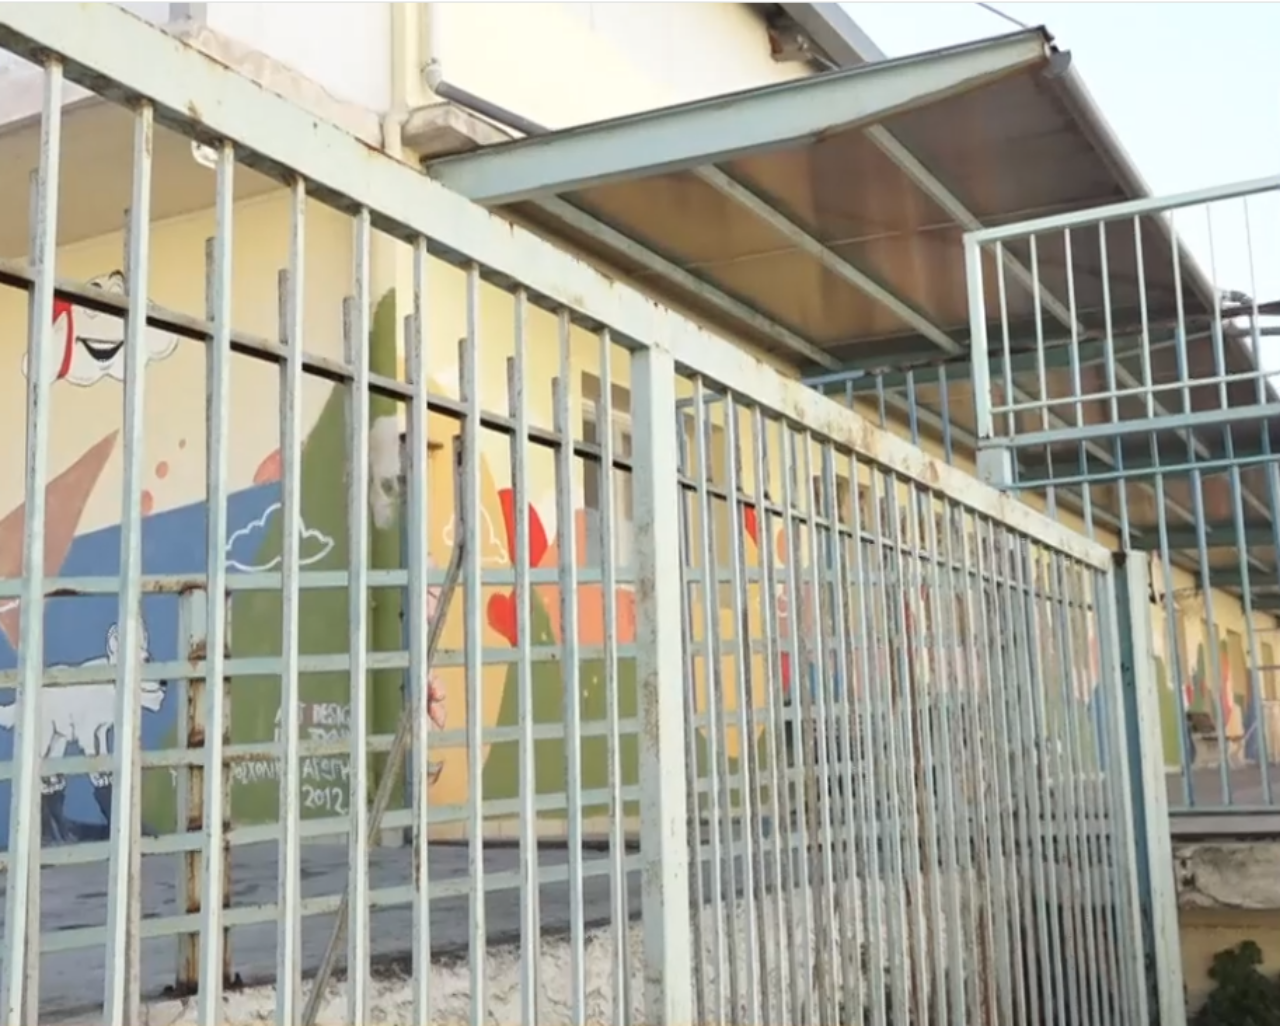 Θεσσαλονίκη: Ακατάλληλο το κτήριο που στεγάζει το ειδικό σχολείο-Αναστάτωση στη μαθητική κοινότητα